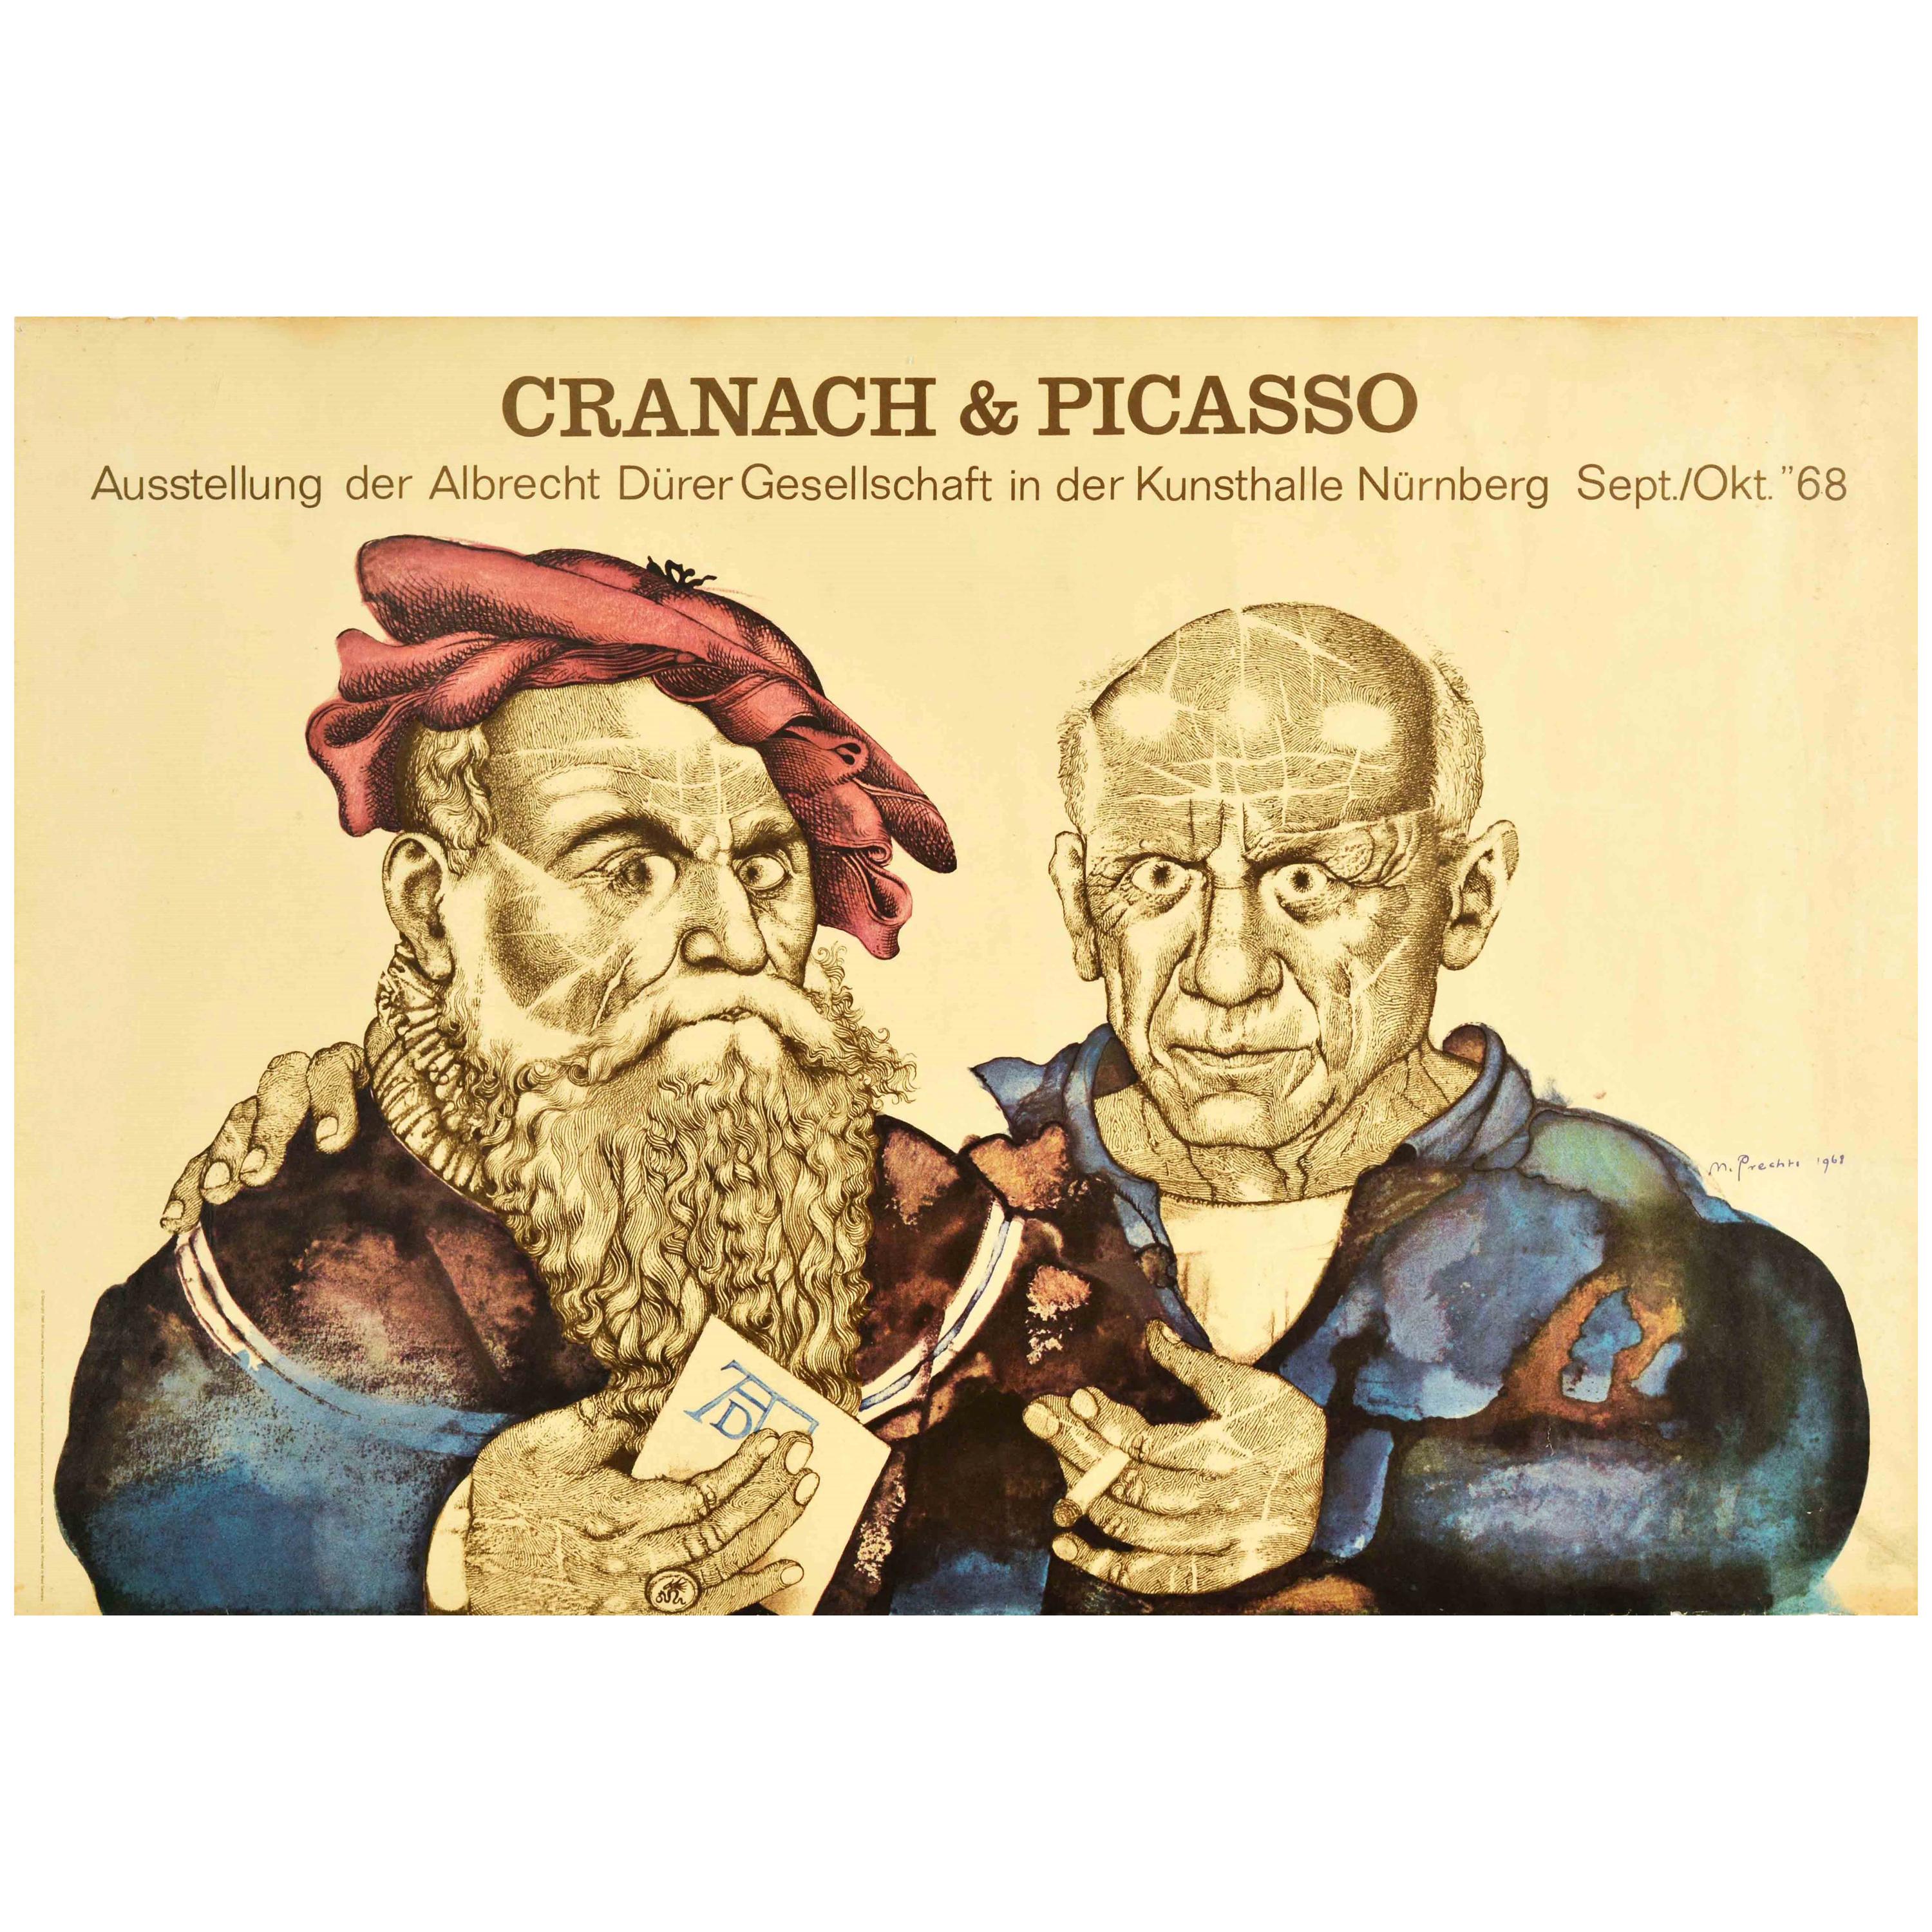 Original Vintage Poster Cranach & Picasso Art Exhibition Albrecht Durer Society For Sale